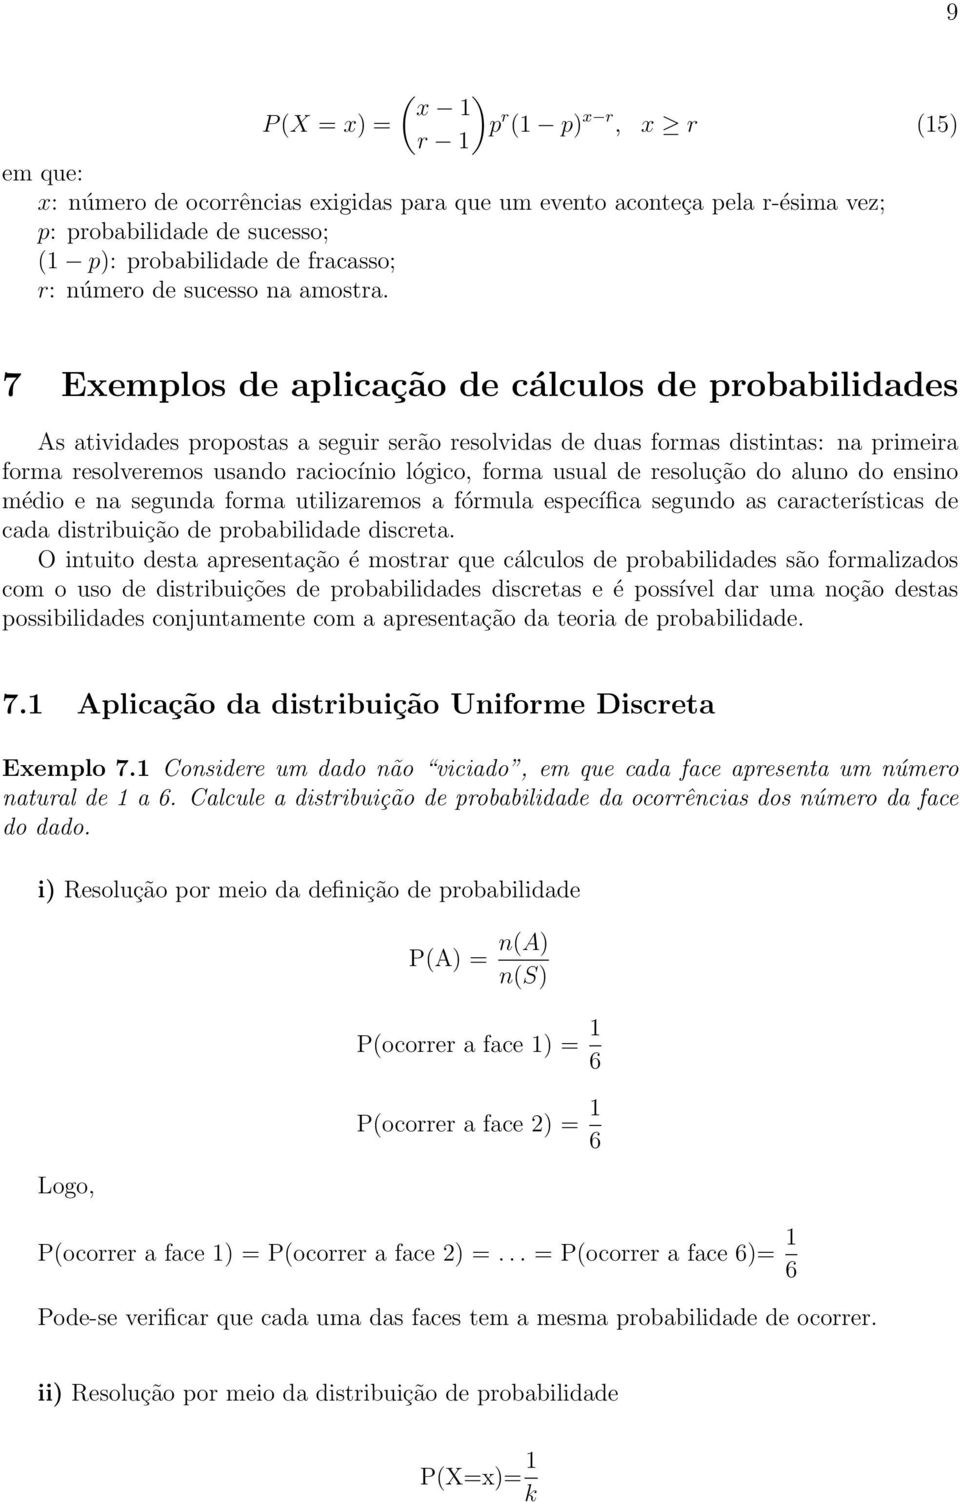 7 Exemplos de aplicação de cálculos de probabilidades As atividades propostas a seguir serão resolvidas de duas formas distintas: na primeira forma resolveremos usando raciocínio lógico, forma usual